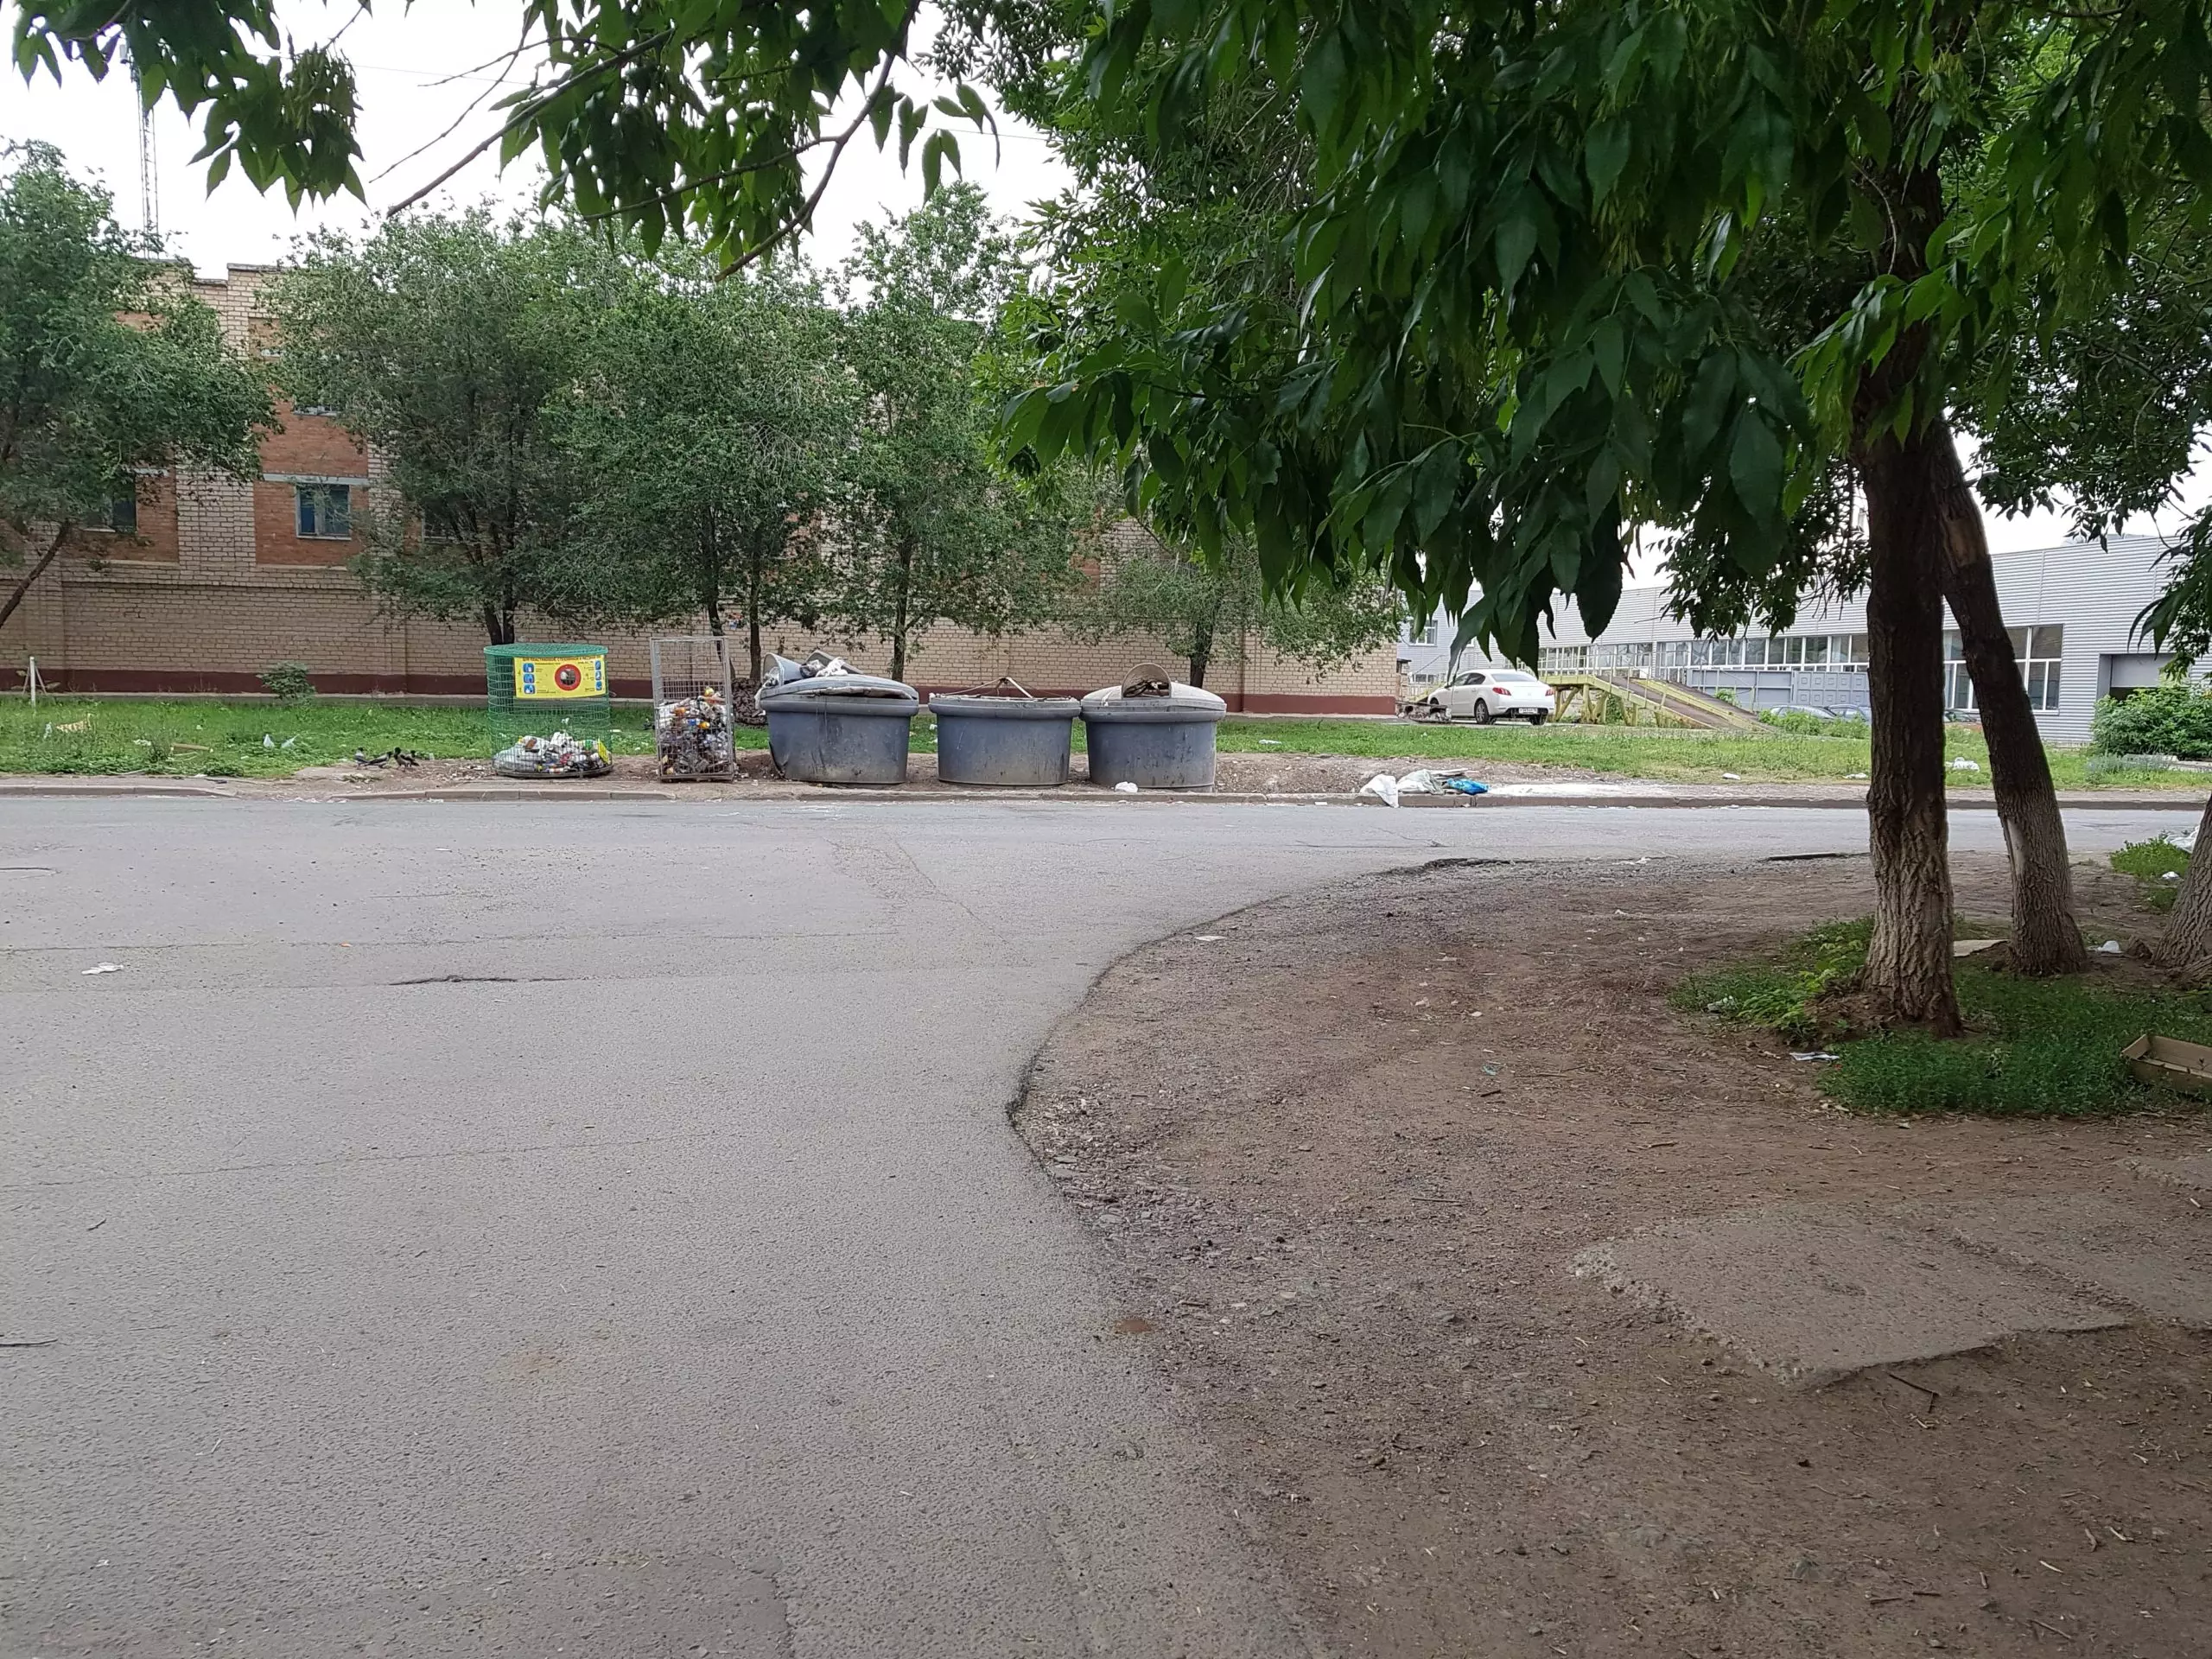 по улице Космическая 1-2/1 была произведена уборка мусора.